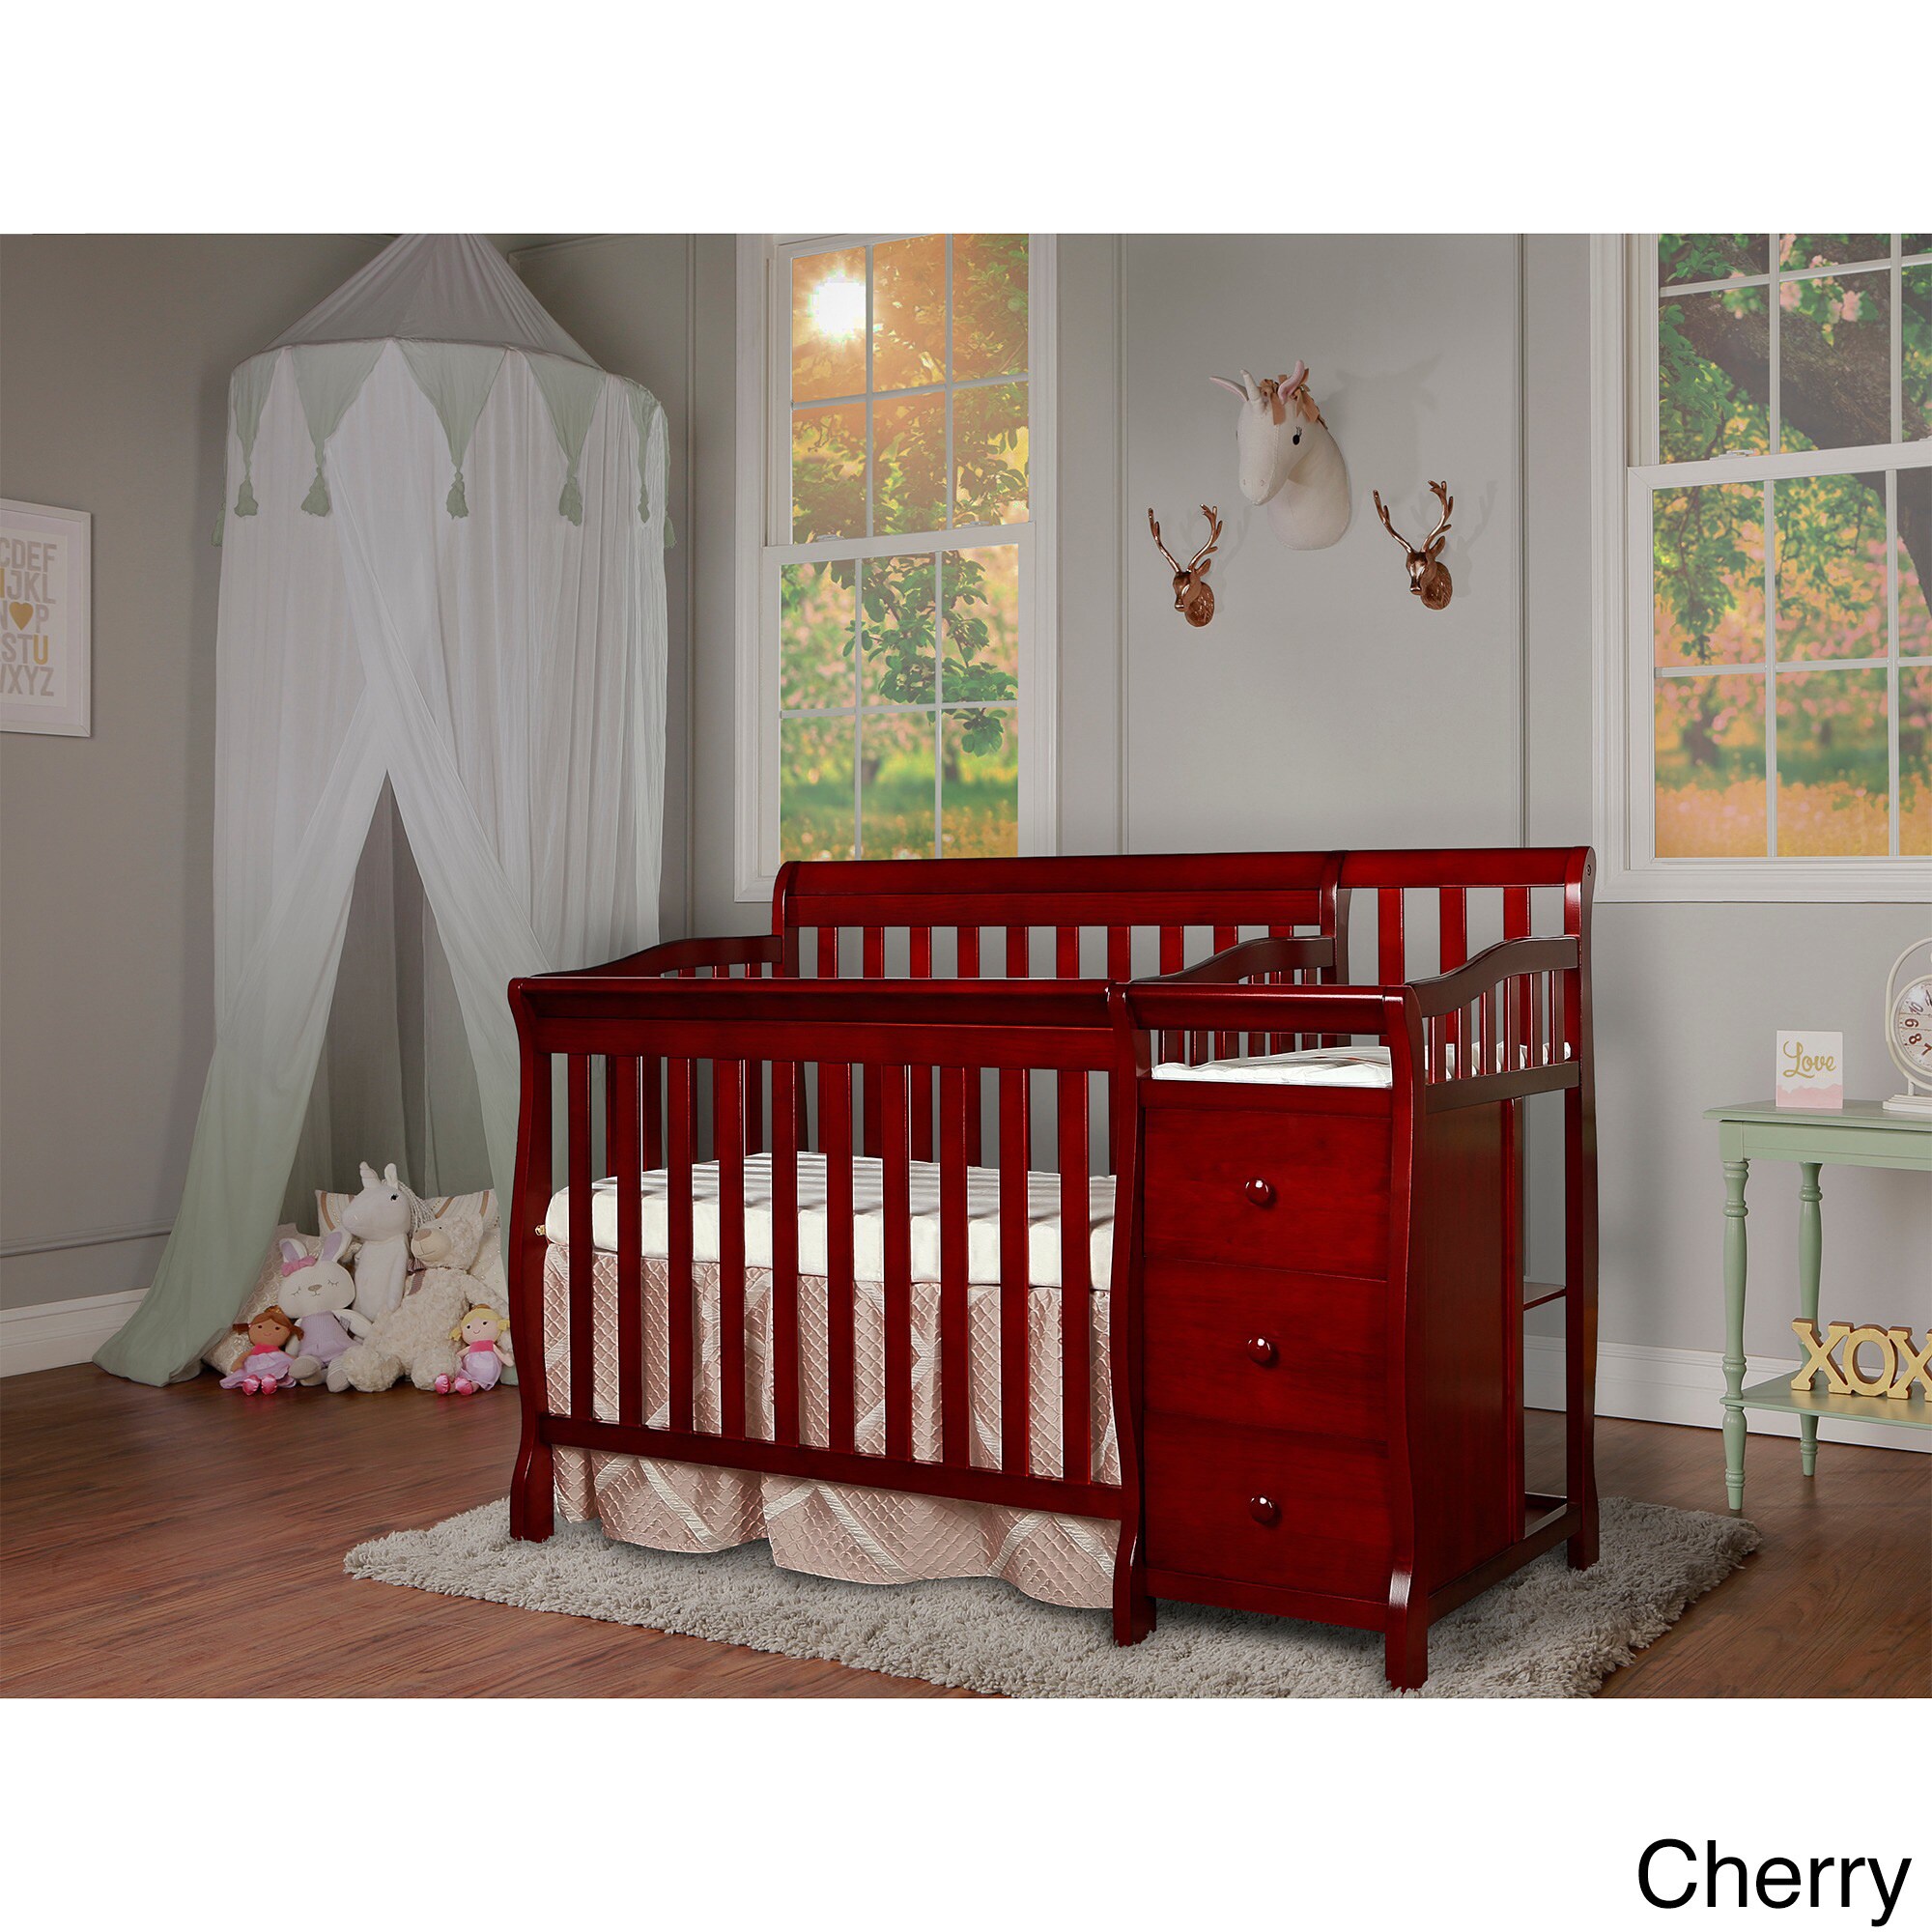 cherry baby crib